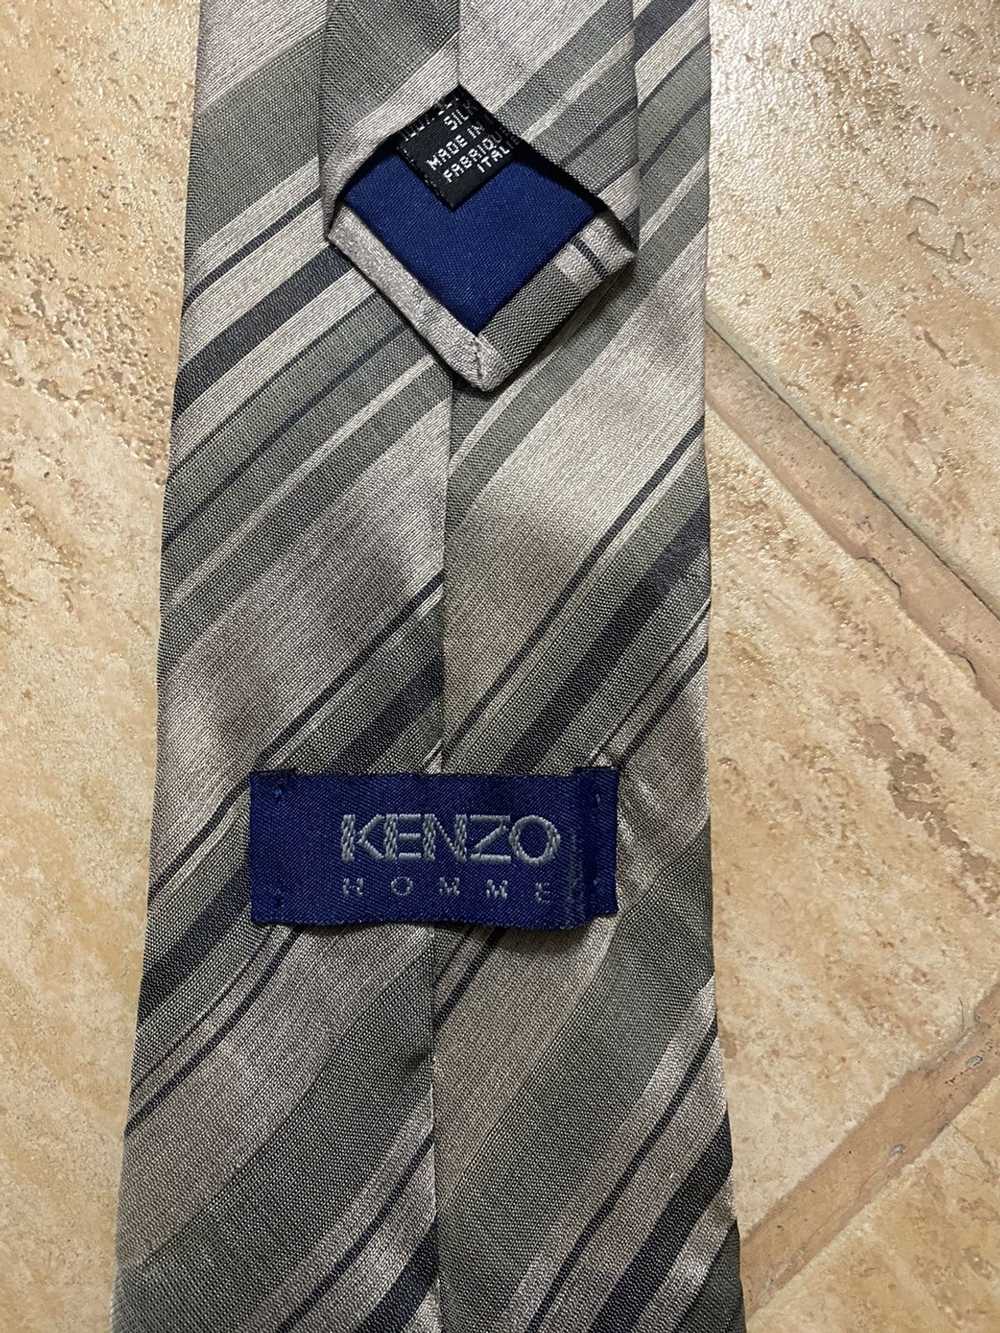 Kenzo × Vintage striped kenzo tie - image 2